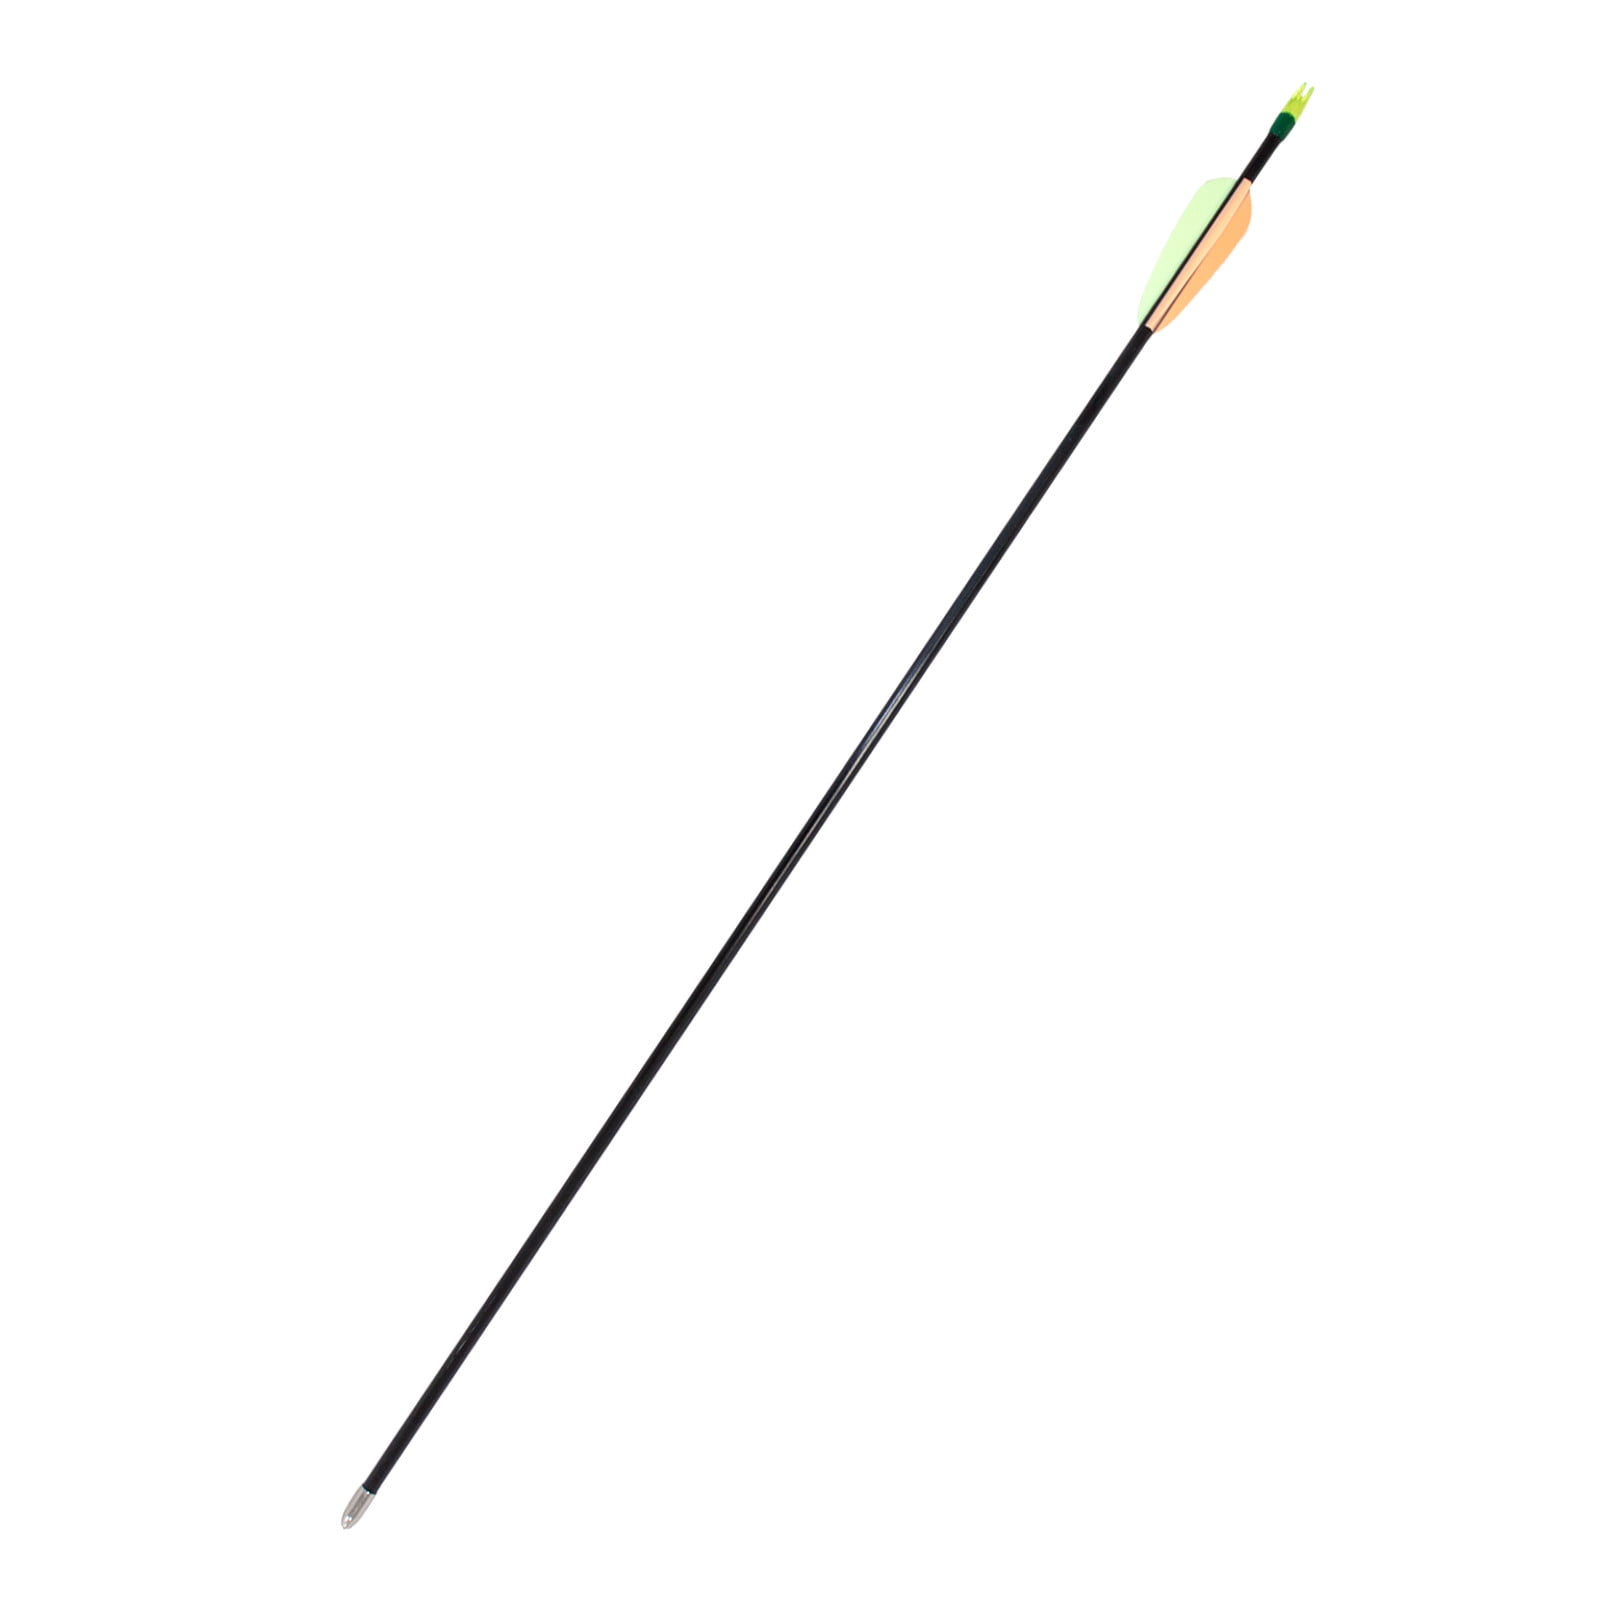 ZSHJGJR 30 Inch Fiberglass Arrow Archery Practice Target Arrows 6mm Arrows with Arrow Quiver for Beginner Recurve Compound Bow 12pcs